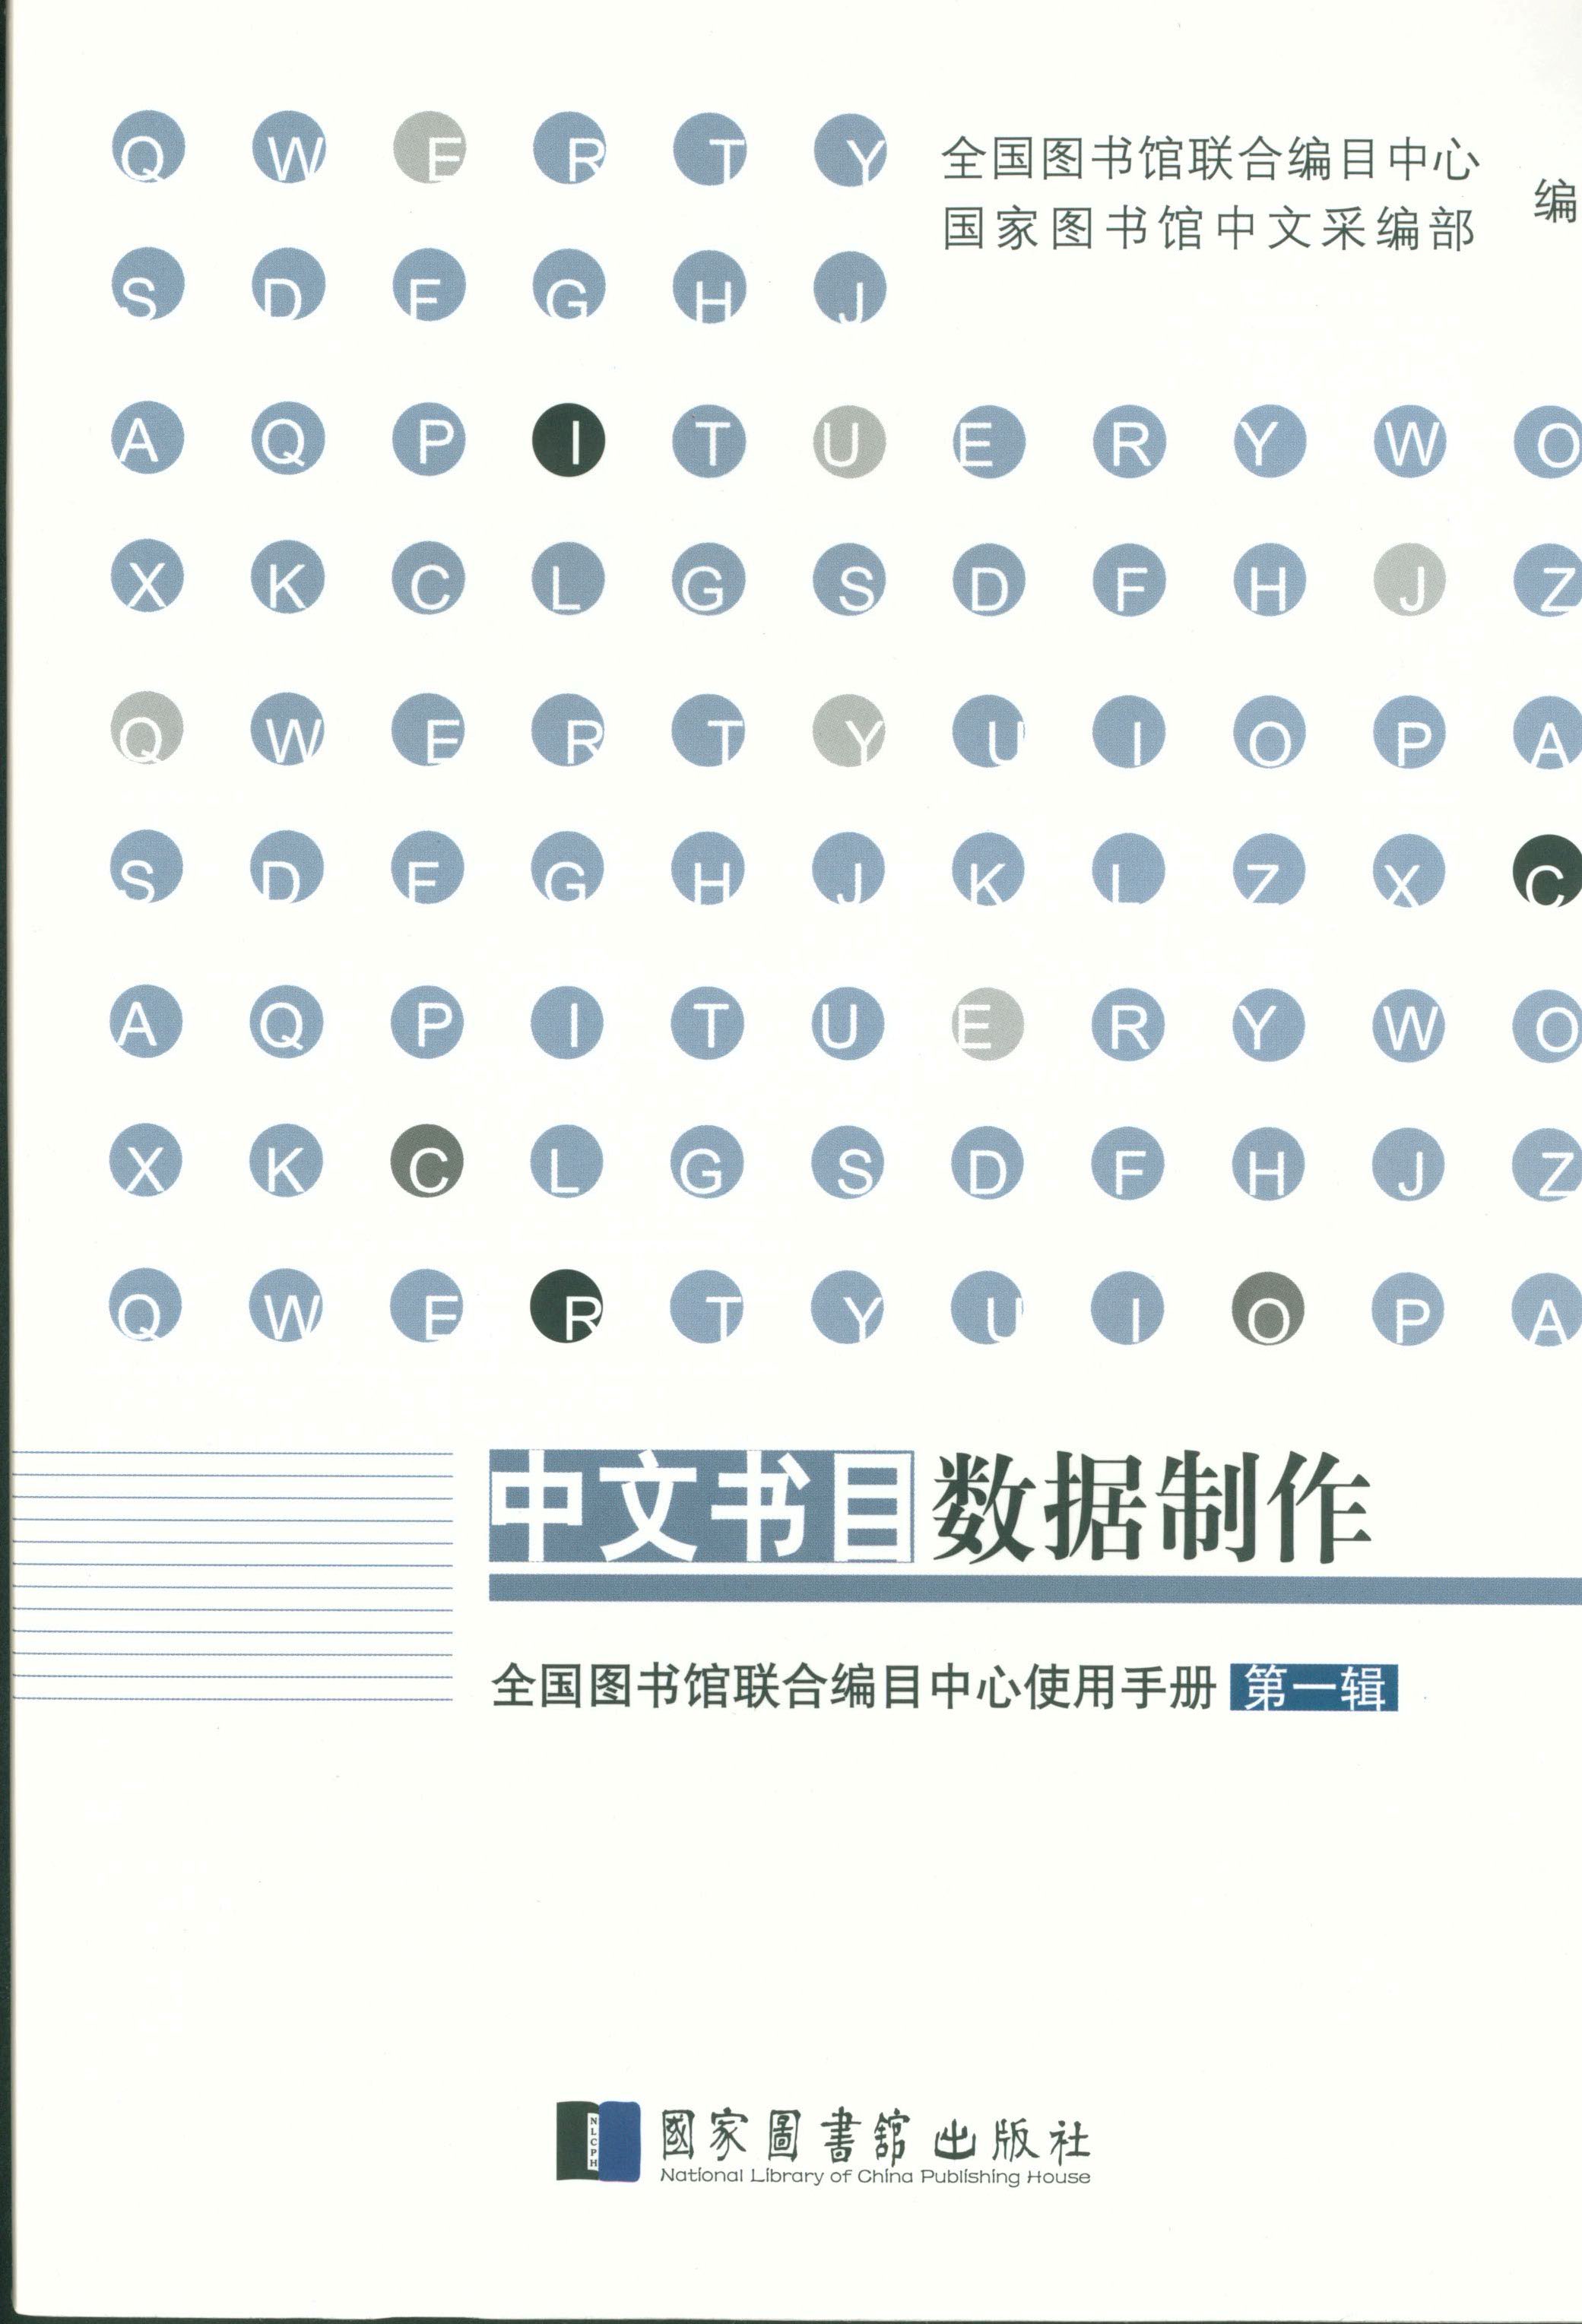 中文书目数据制作